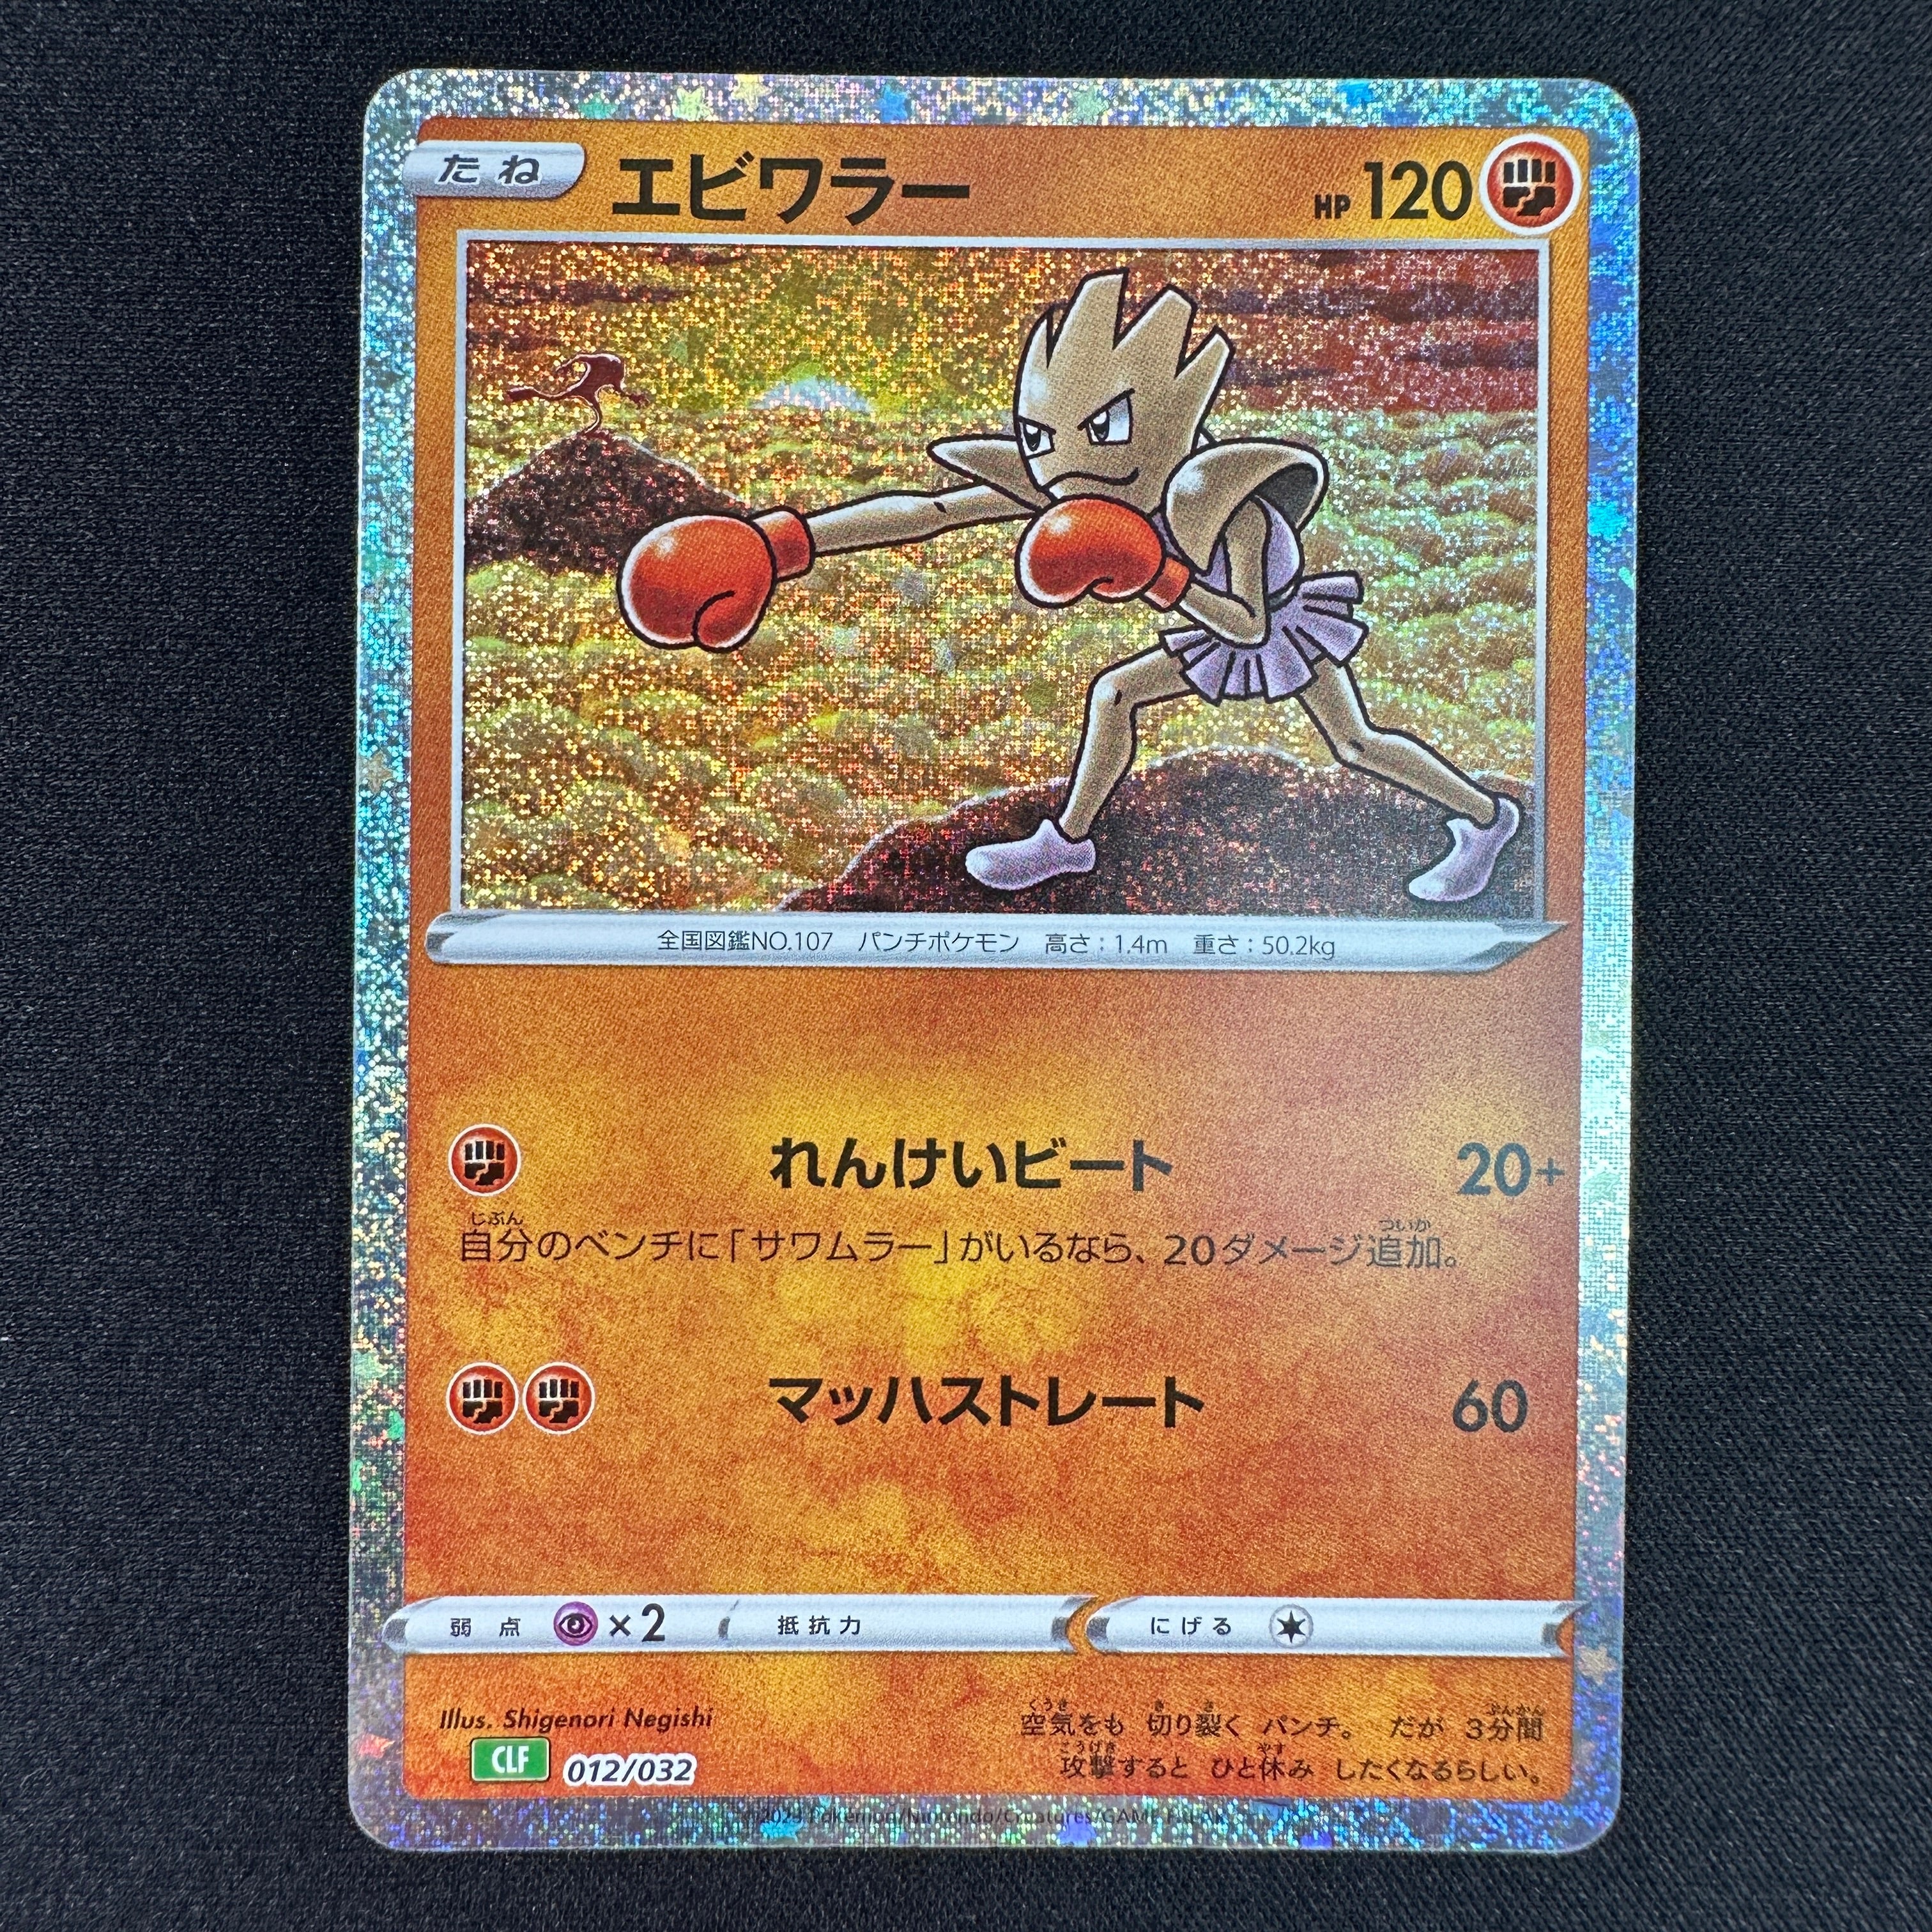 Pokémon Card Game Scarlet & Violet ｢Pokémon Card Game Classic｣  Pokémon Card Game CLF 012/032  Hitmonchan